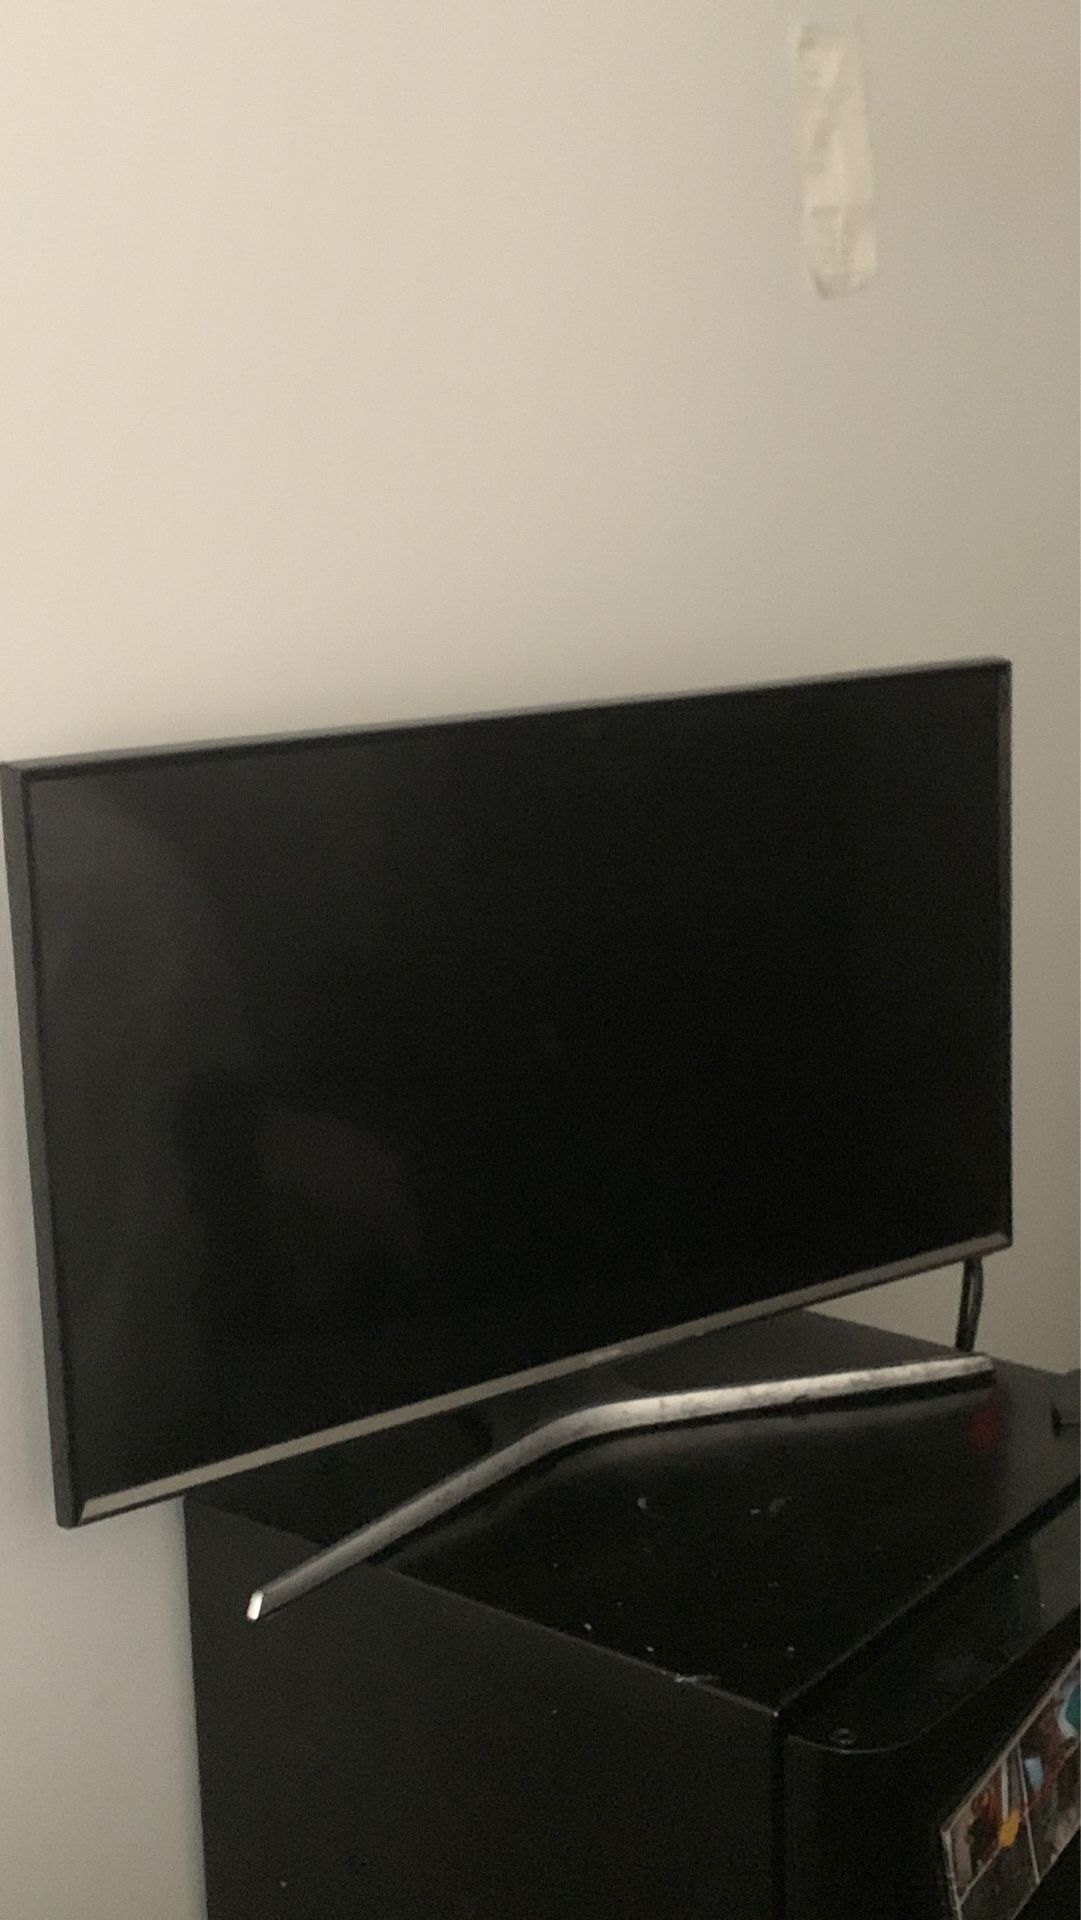 32 inch Smart TV